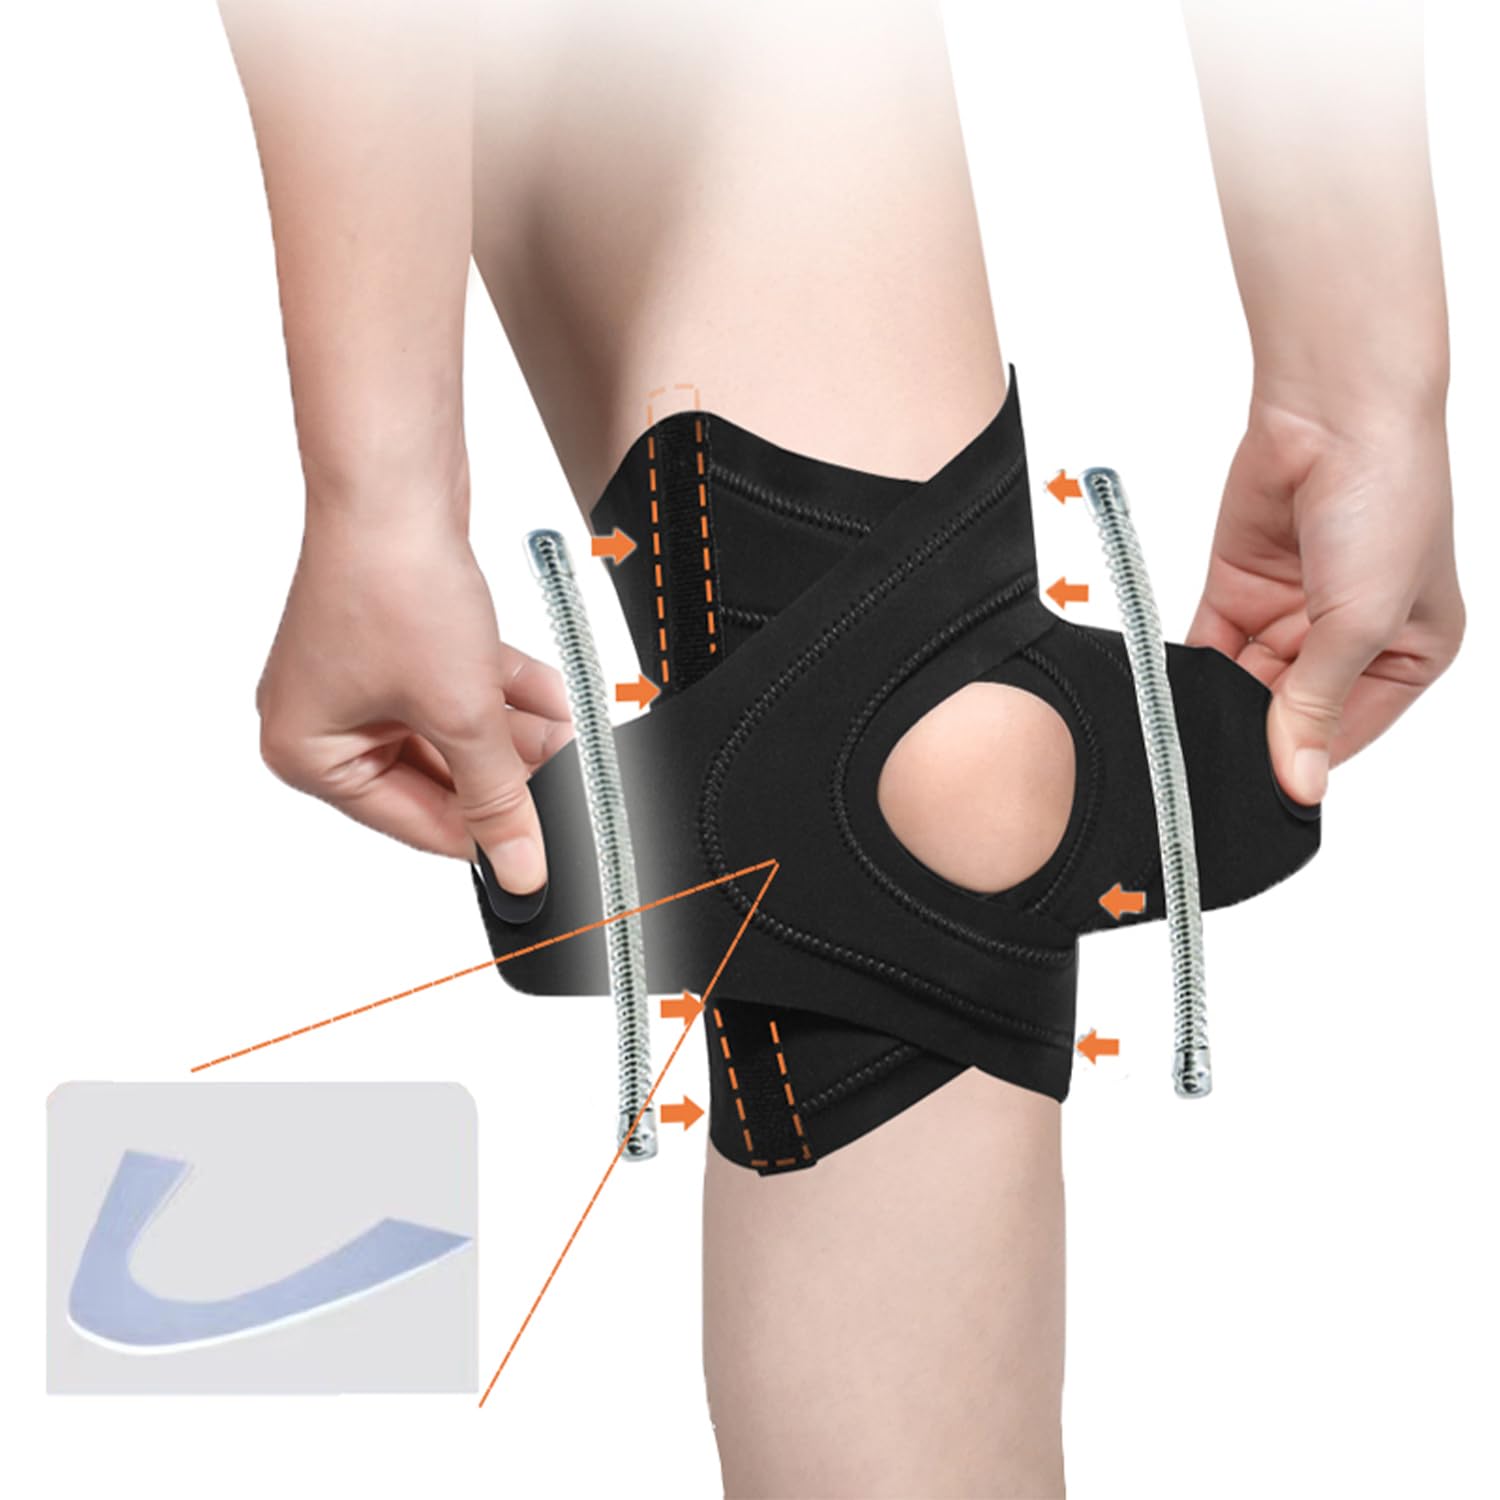 【整形外科の専門家と防具デザイナーは共同で監督製造した 】 自己研究3層混紡生地（2層錦アンモニア生地＋1層圧力メッシュ布）を採用し、肌に親しんで通気する。微弾加圧で、膝の曲線によりフィットし、着心地がよく脱落しない。★サイズ（膝上10 cmで脚周りを測定するのを参考）（S：34-40 cm、M：39-46 cm、L：45-51 cm）【双ばね支持 蝶形裁断】膝サポーターの両側に2本のばね条があり、膝を曲げた時に膝の圧力を下げ、膝の反発を補助し、膝の支持力を提供する。ハム窩の弧度を貼り合わせ、異なる脚型に適応し、膝に貼り合わせ、日常活動の屈伸に影響しない。【二股型固定バインダー膝蓋骨ガスケット】膝蓋骨を全方位に固定し、長時間激しい運動をしても膝蓋骨を固定し、安定的に回復し、運動は膝蓋痛がなく、突破に協力する。【男女兼用 左右兼用】半月板固定、膝蓋骨固定、膝の損傷回復、ランニング、登山、ジャンピング、縄跳び、バレーボール、バドミントン、野球、バスケットボール、日常生活の防護に最適です。（手洗い清潔、干した後、繰り返し使用することをお勧めします）★【品質保証】万が一初期不良やサイズが合わない場合、ご購入後90日以内であれば交換・返品が可能です。お気軽にご連絡ください。万が一お気に召さない場合は全額返金いたします。